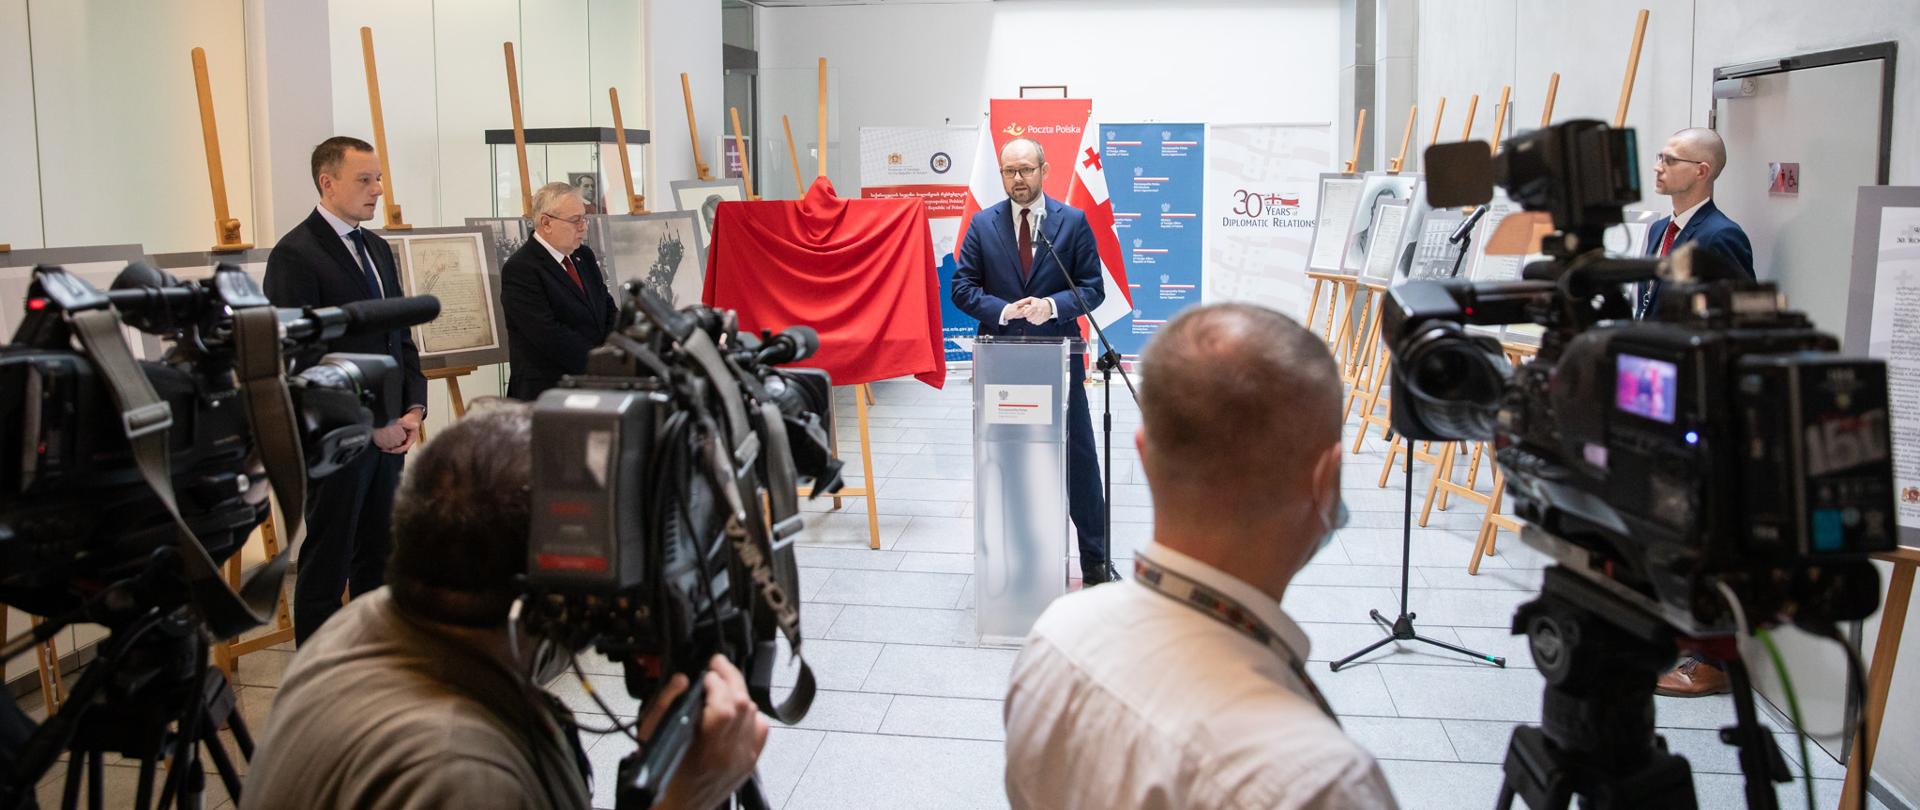 Wiceminister Marcin Przydacz otworzył wystawę z okazji nawiązania stosunków dyplomatycznych pomiędzy Polską i Gruzją